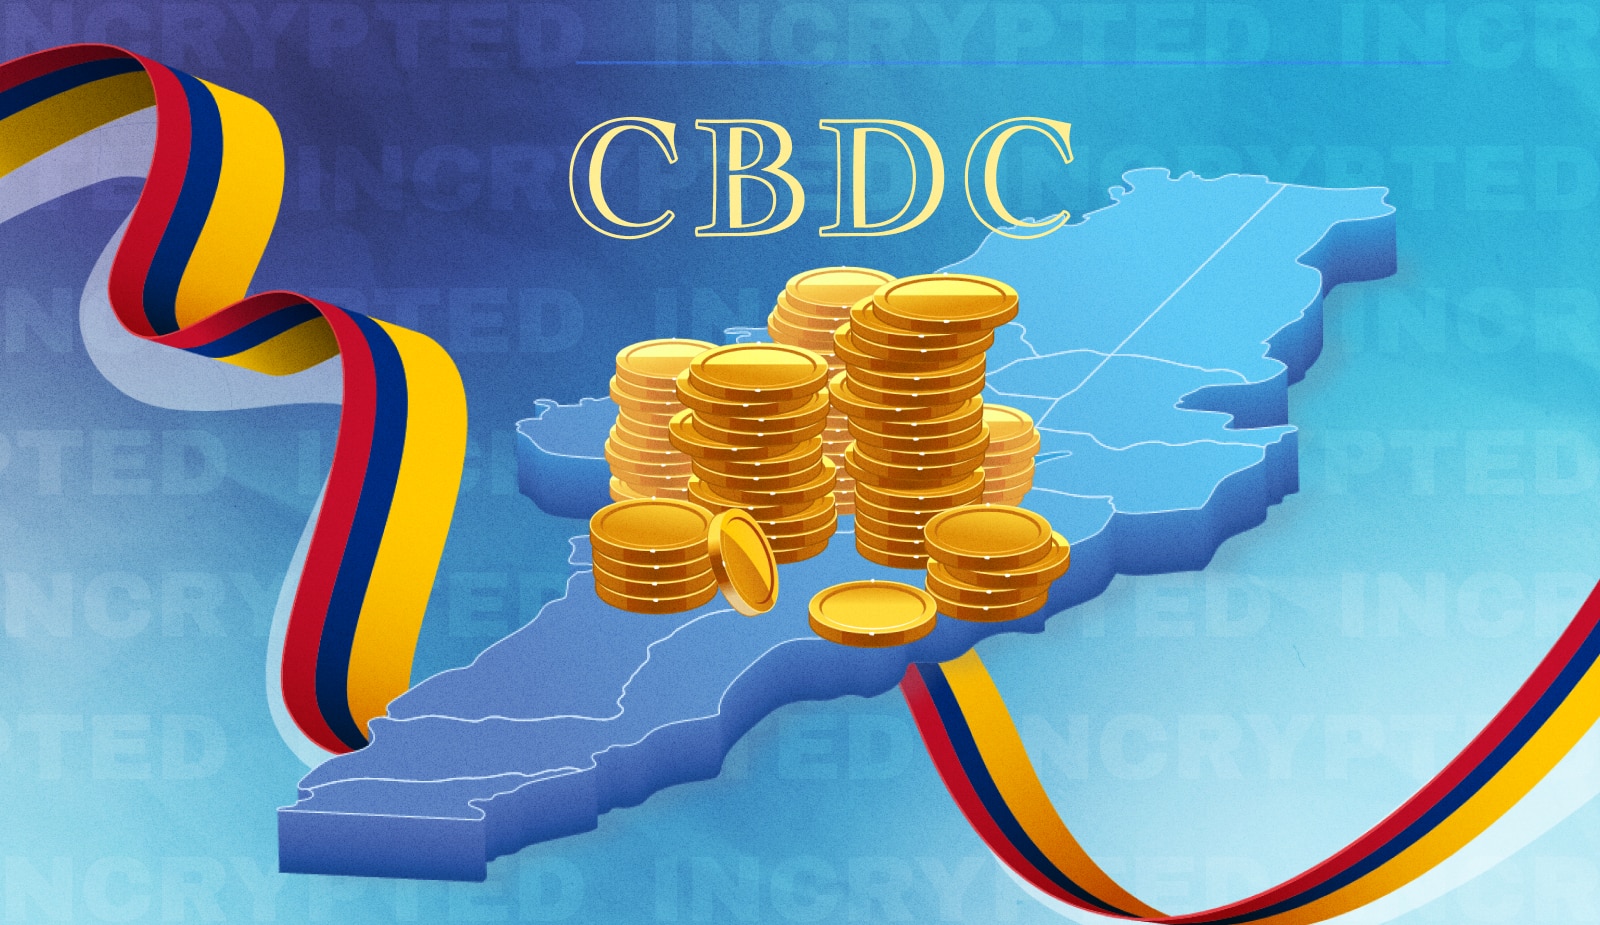 Колумбия внедрит CBDC для борьбы с неуплатой налогов. Заглавный коллаж новости.